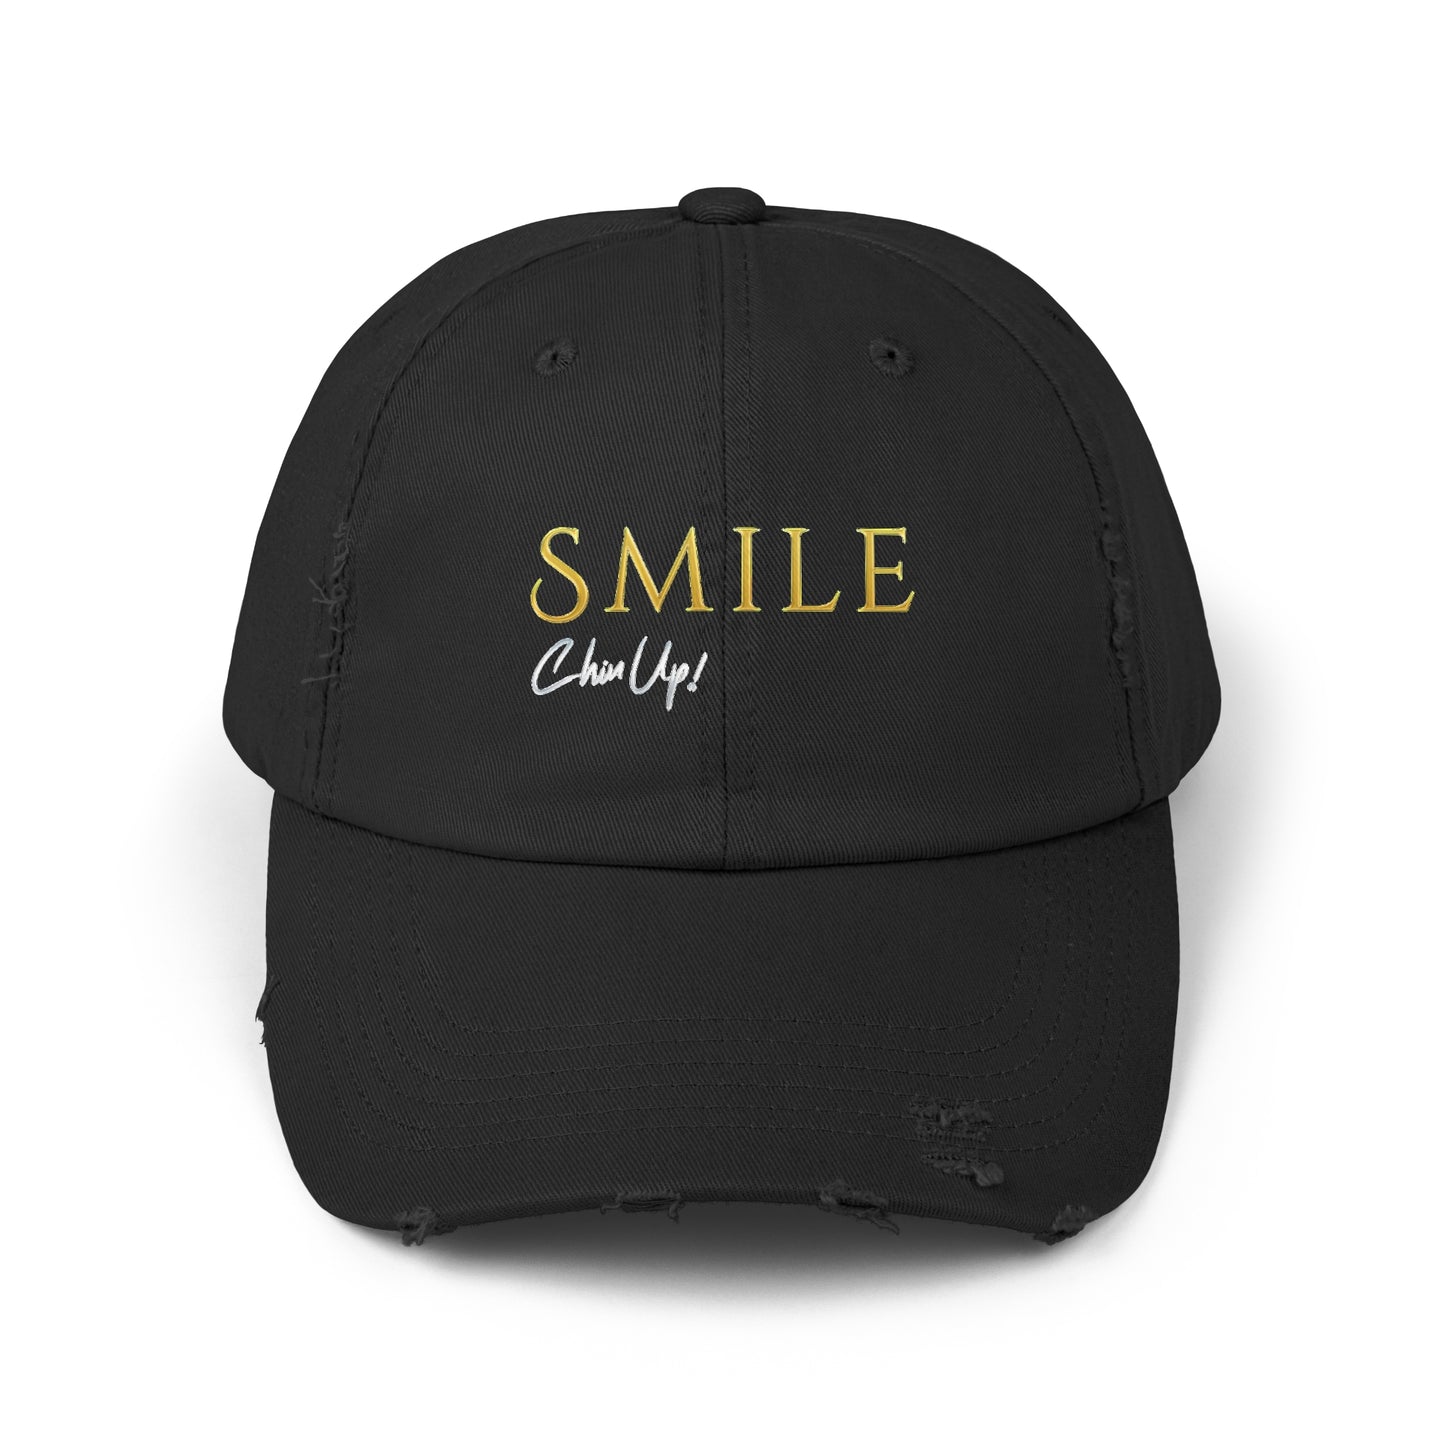 SMILE, Chin Up! Unisex Distressed Black Cap